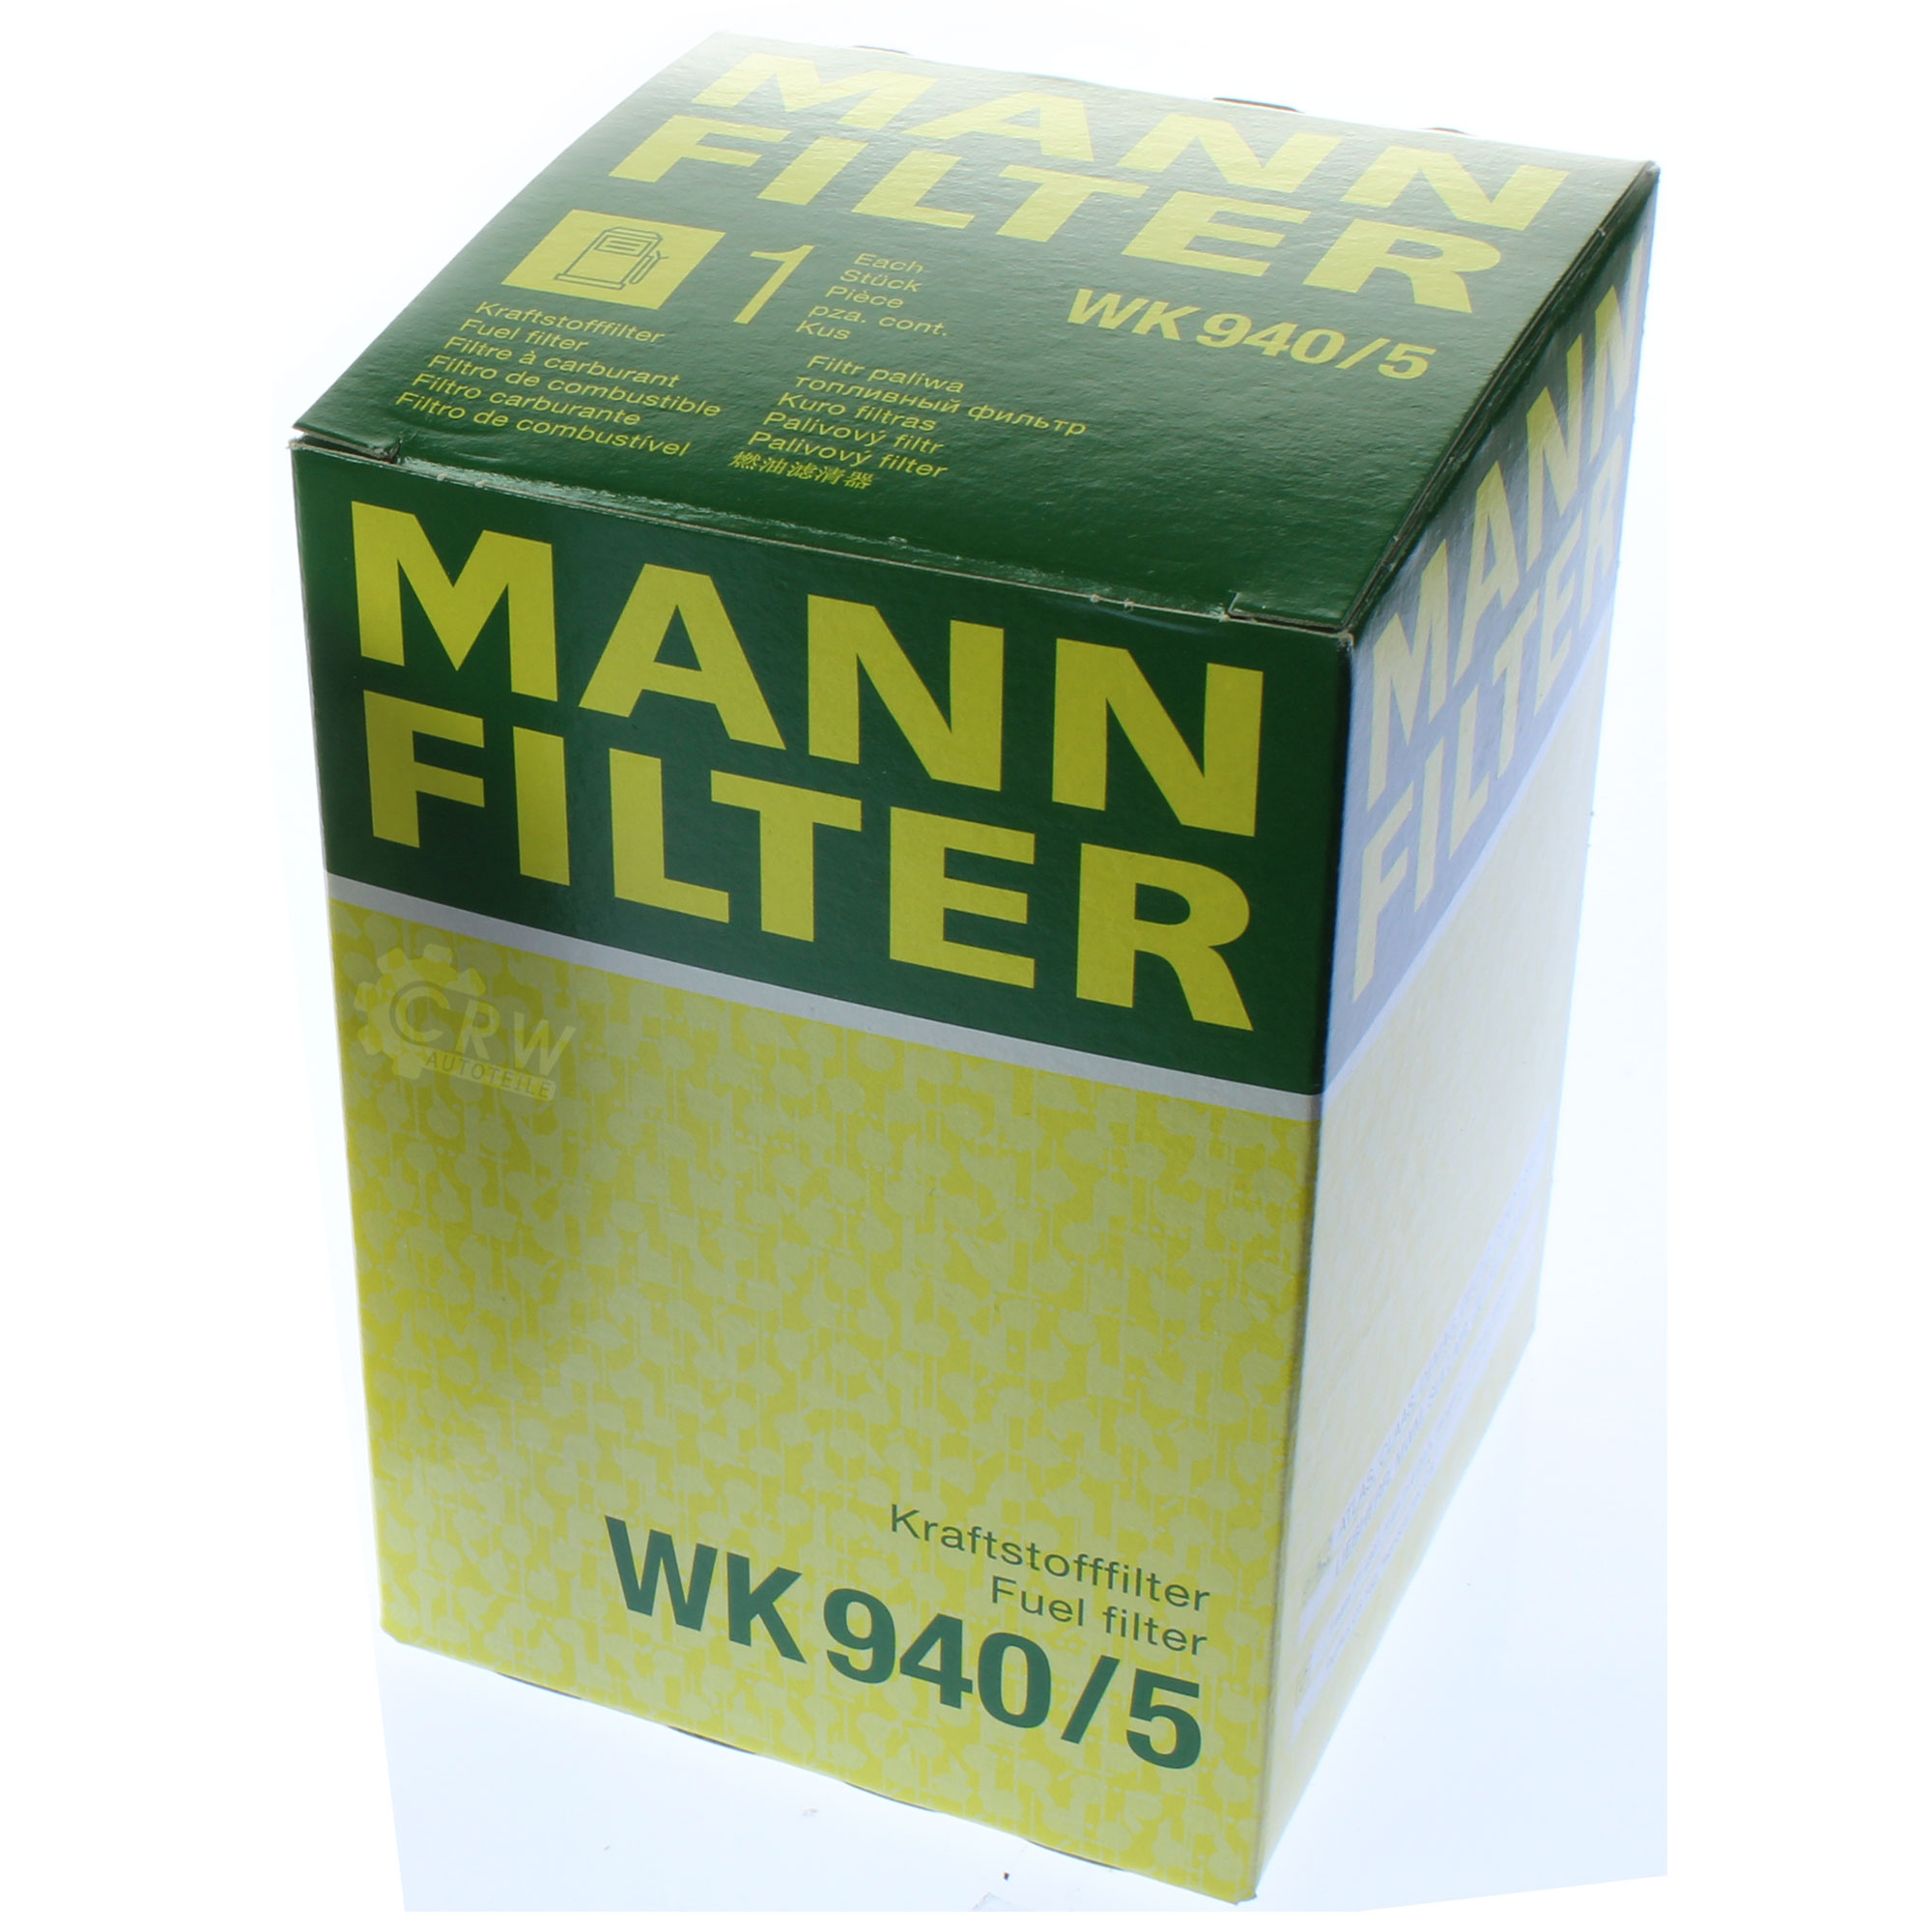 MANN-FILTER Kraftstofffilter WK 940/5 Fuel Filter